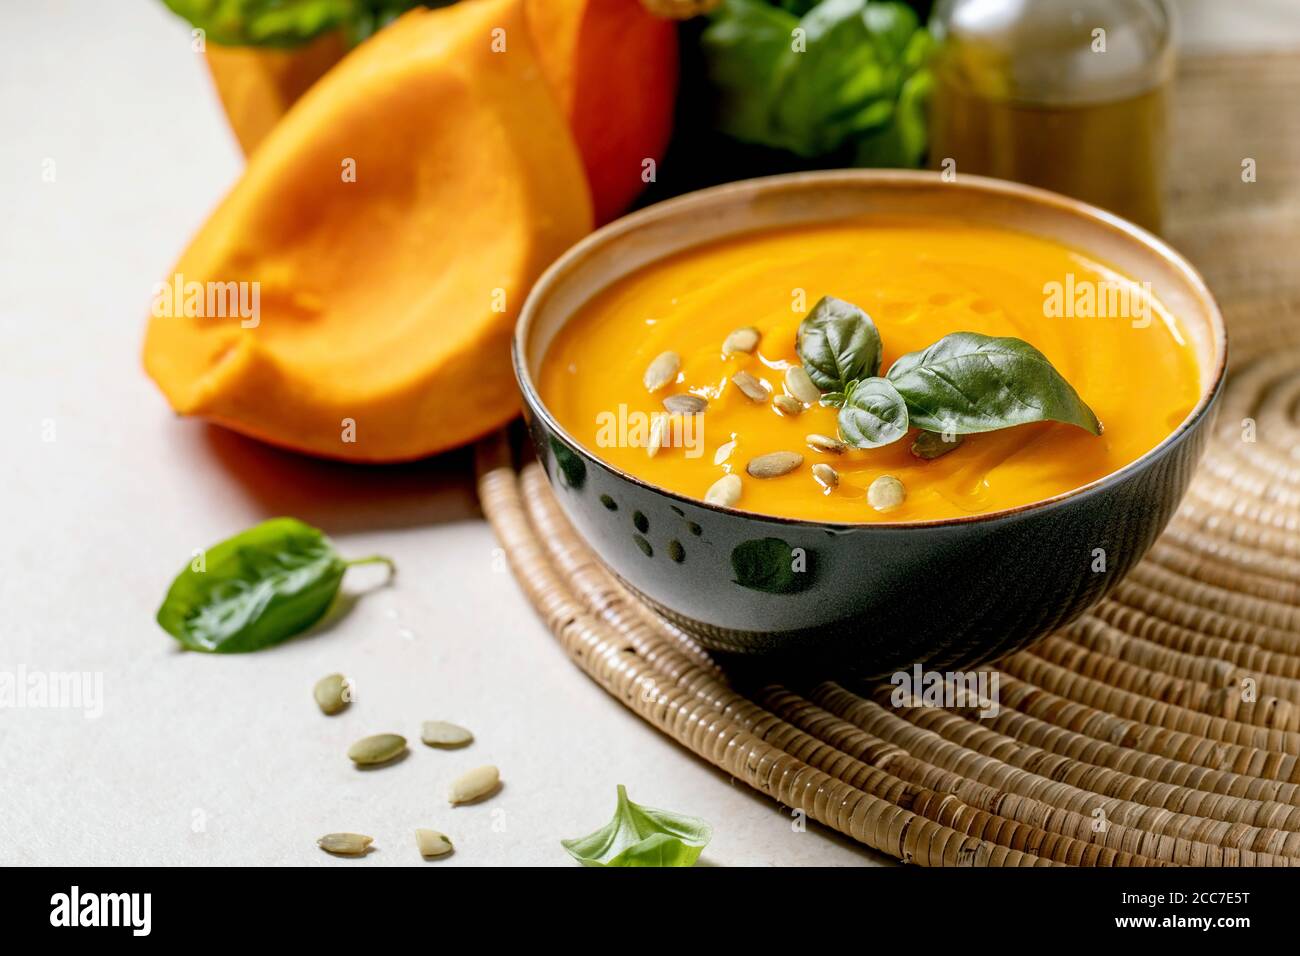 Schüssel mit vegetarischer Kürbis- oder Karotten-Sahnesuppe, dekoriert mit frischem Basilikum, Olivenöl und Kürbiskernen auf weißer Textur-Tabelle mit Zutaten oben. Stockfoto